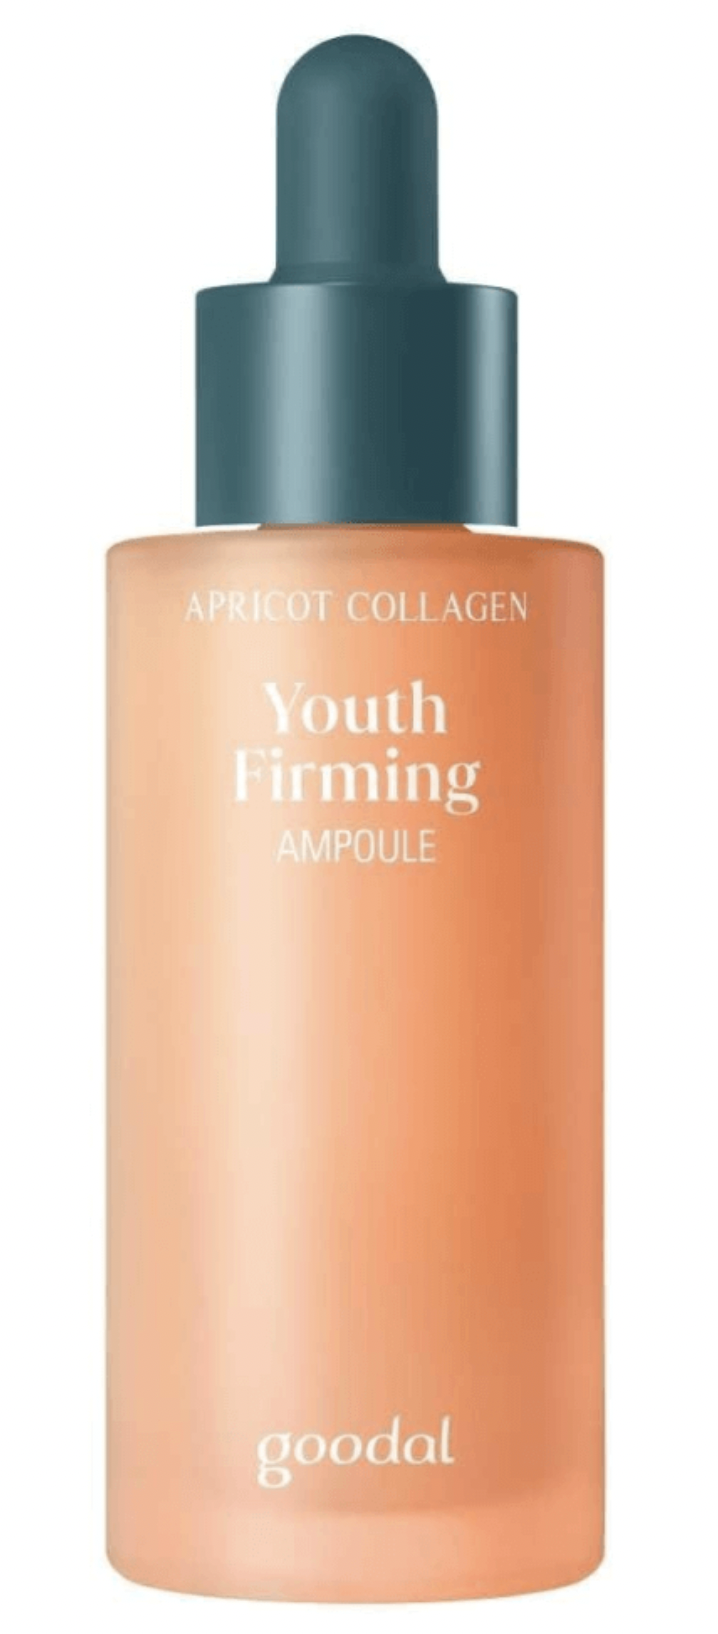 Укрепляющая липосомная ампула Goodal с абрикосом Apricot Collagen Youth Firming Ampoule ампула deoproce розовая для повышения уровня коллагена pink collagen boosting ampoule